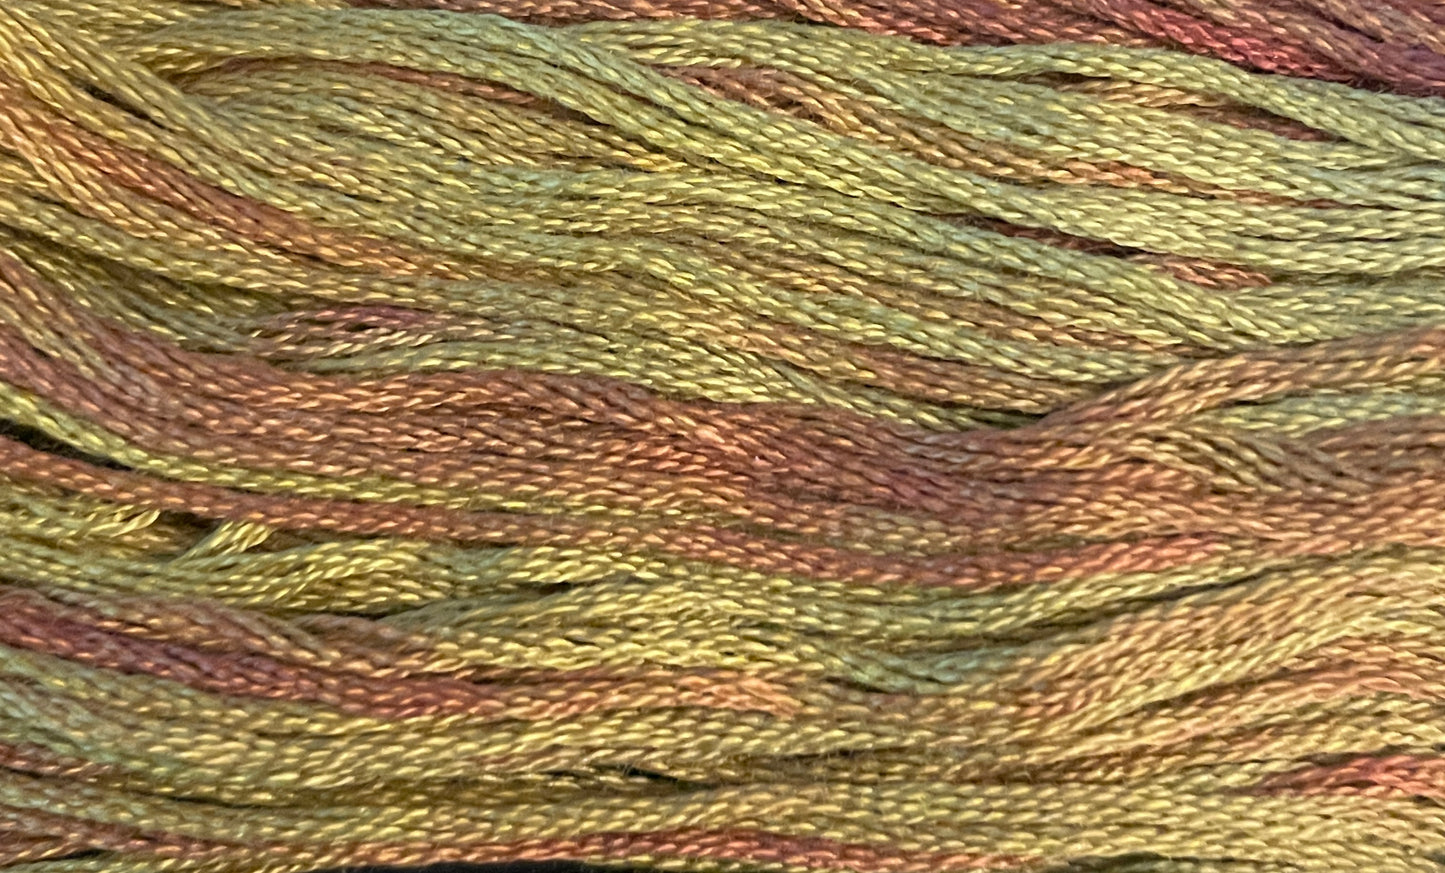 Autumn Leaves - Gentle Arts Cotton Thread - 5 yard Skein - Cross Stitch Floss